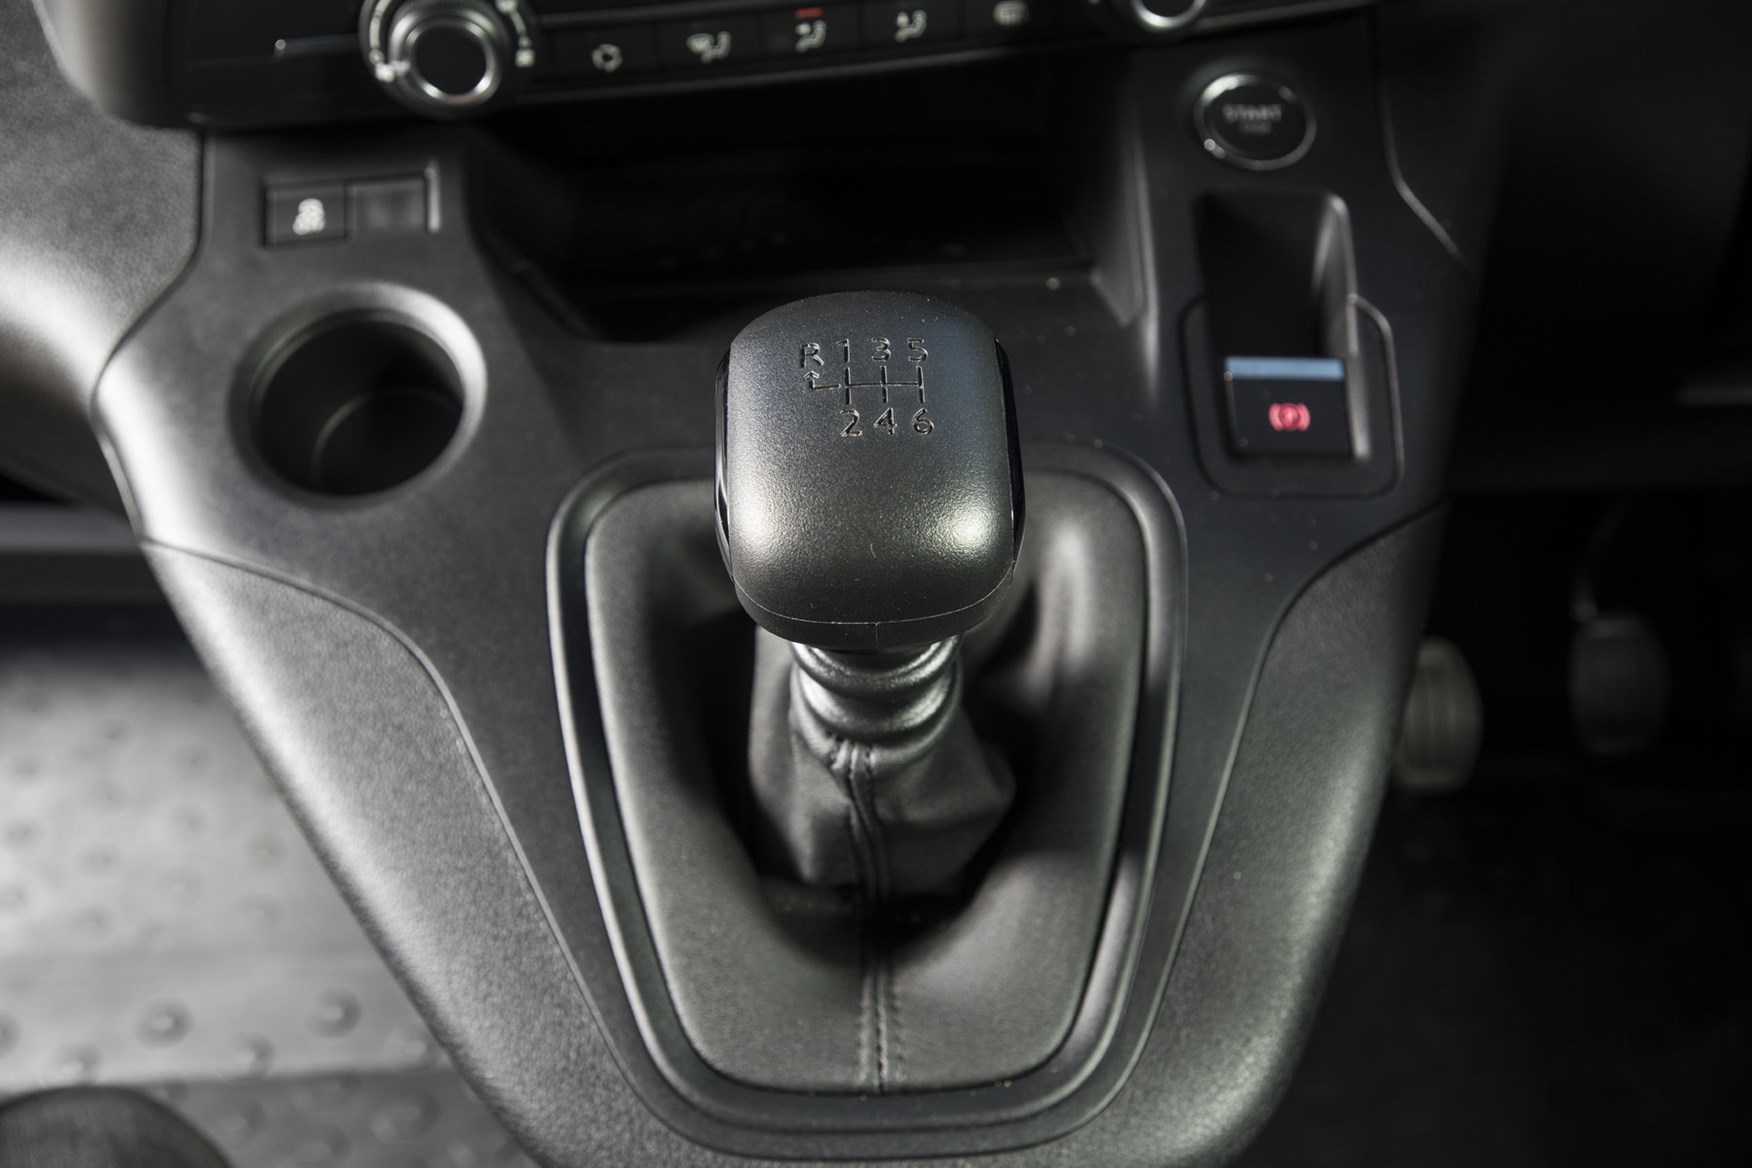 Citroen Berlingo van review - 2019 model, gearlever